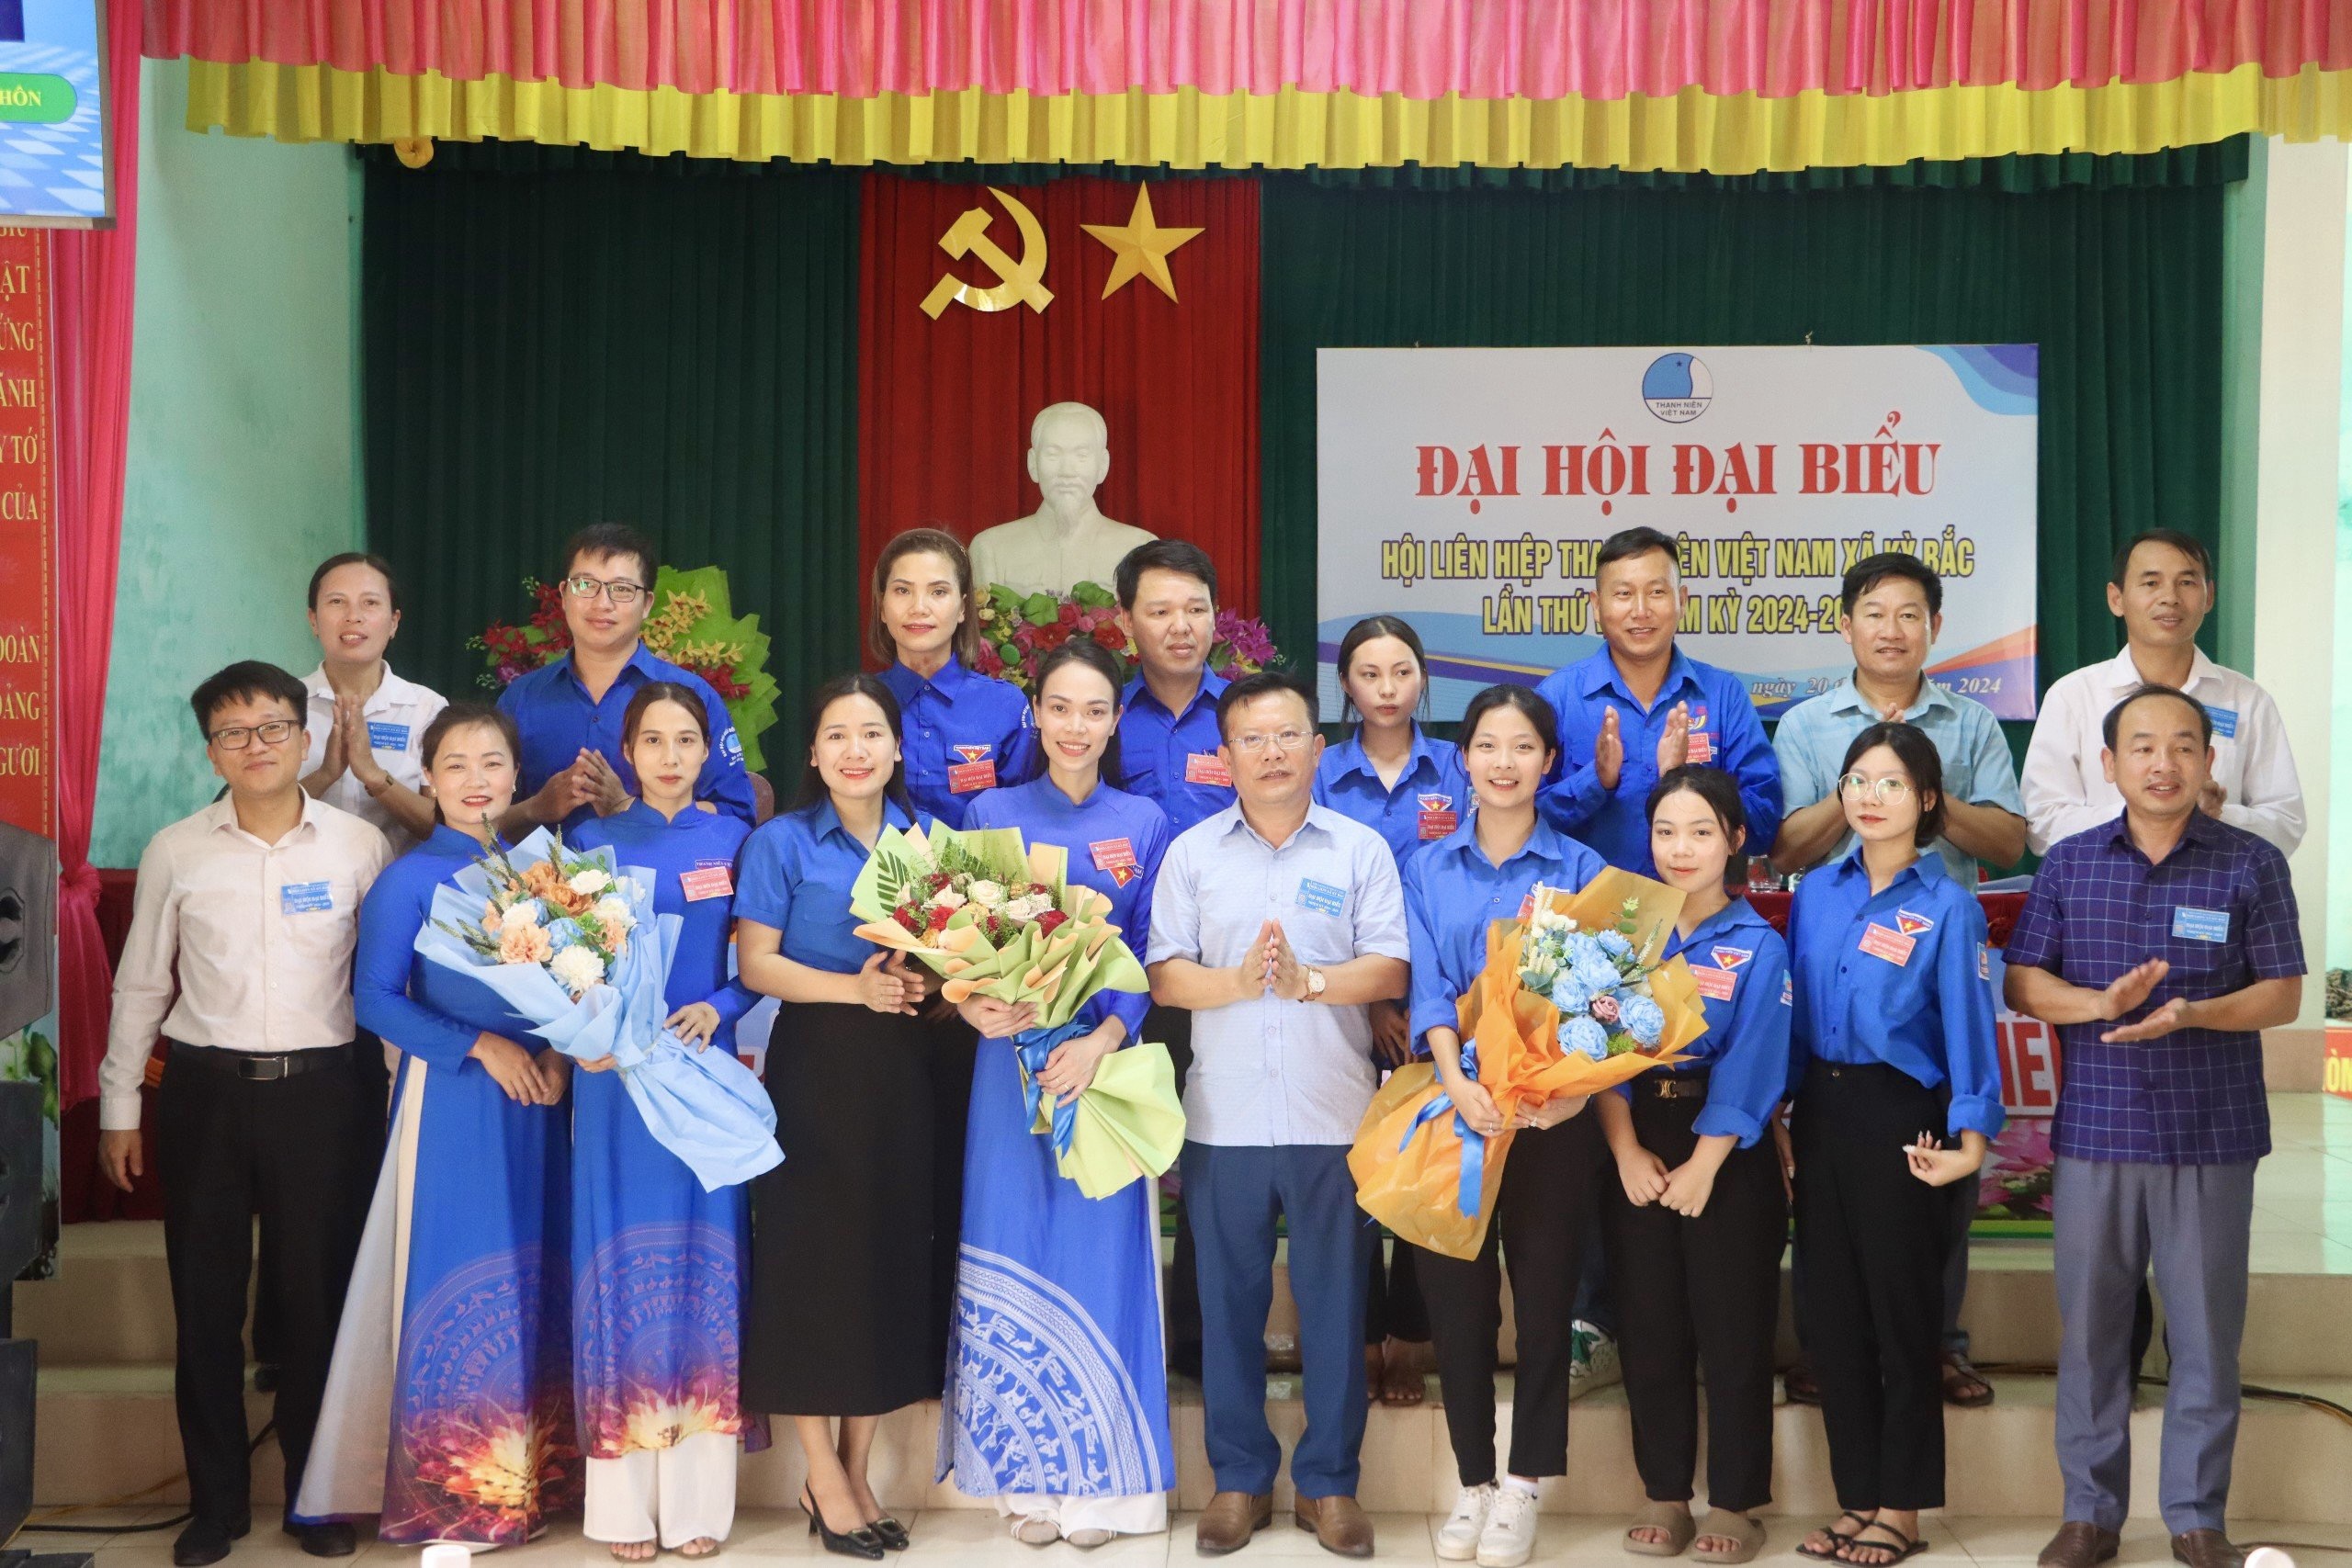 Đại hội đại biểu Hội LHTN Việt Nam xã Kỳ Bắc lần thứ V, nhiệm kỳ 2024-2029 thành công tốt đẹp